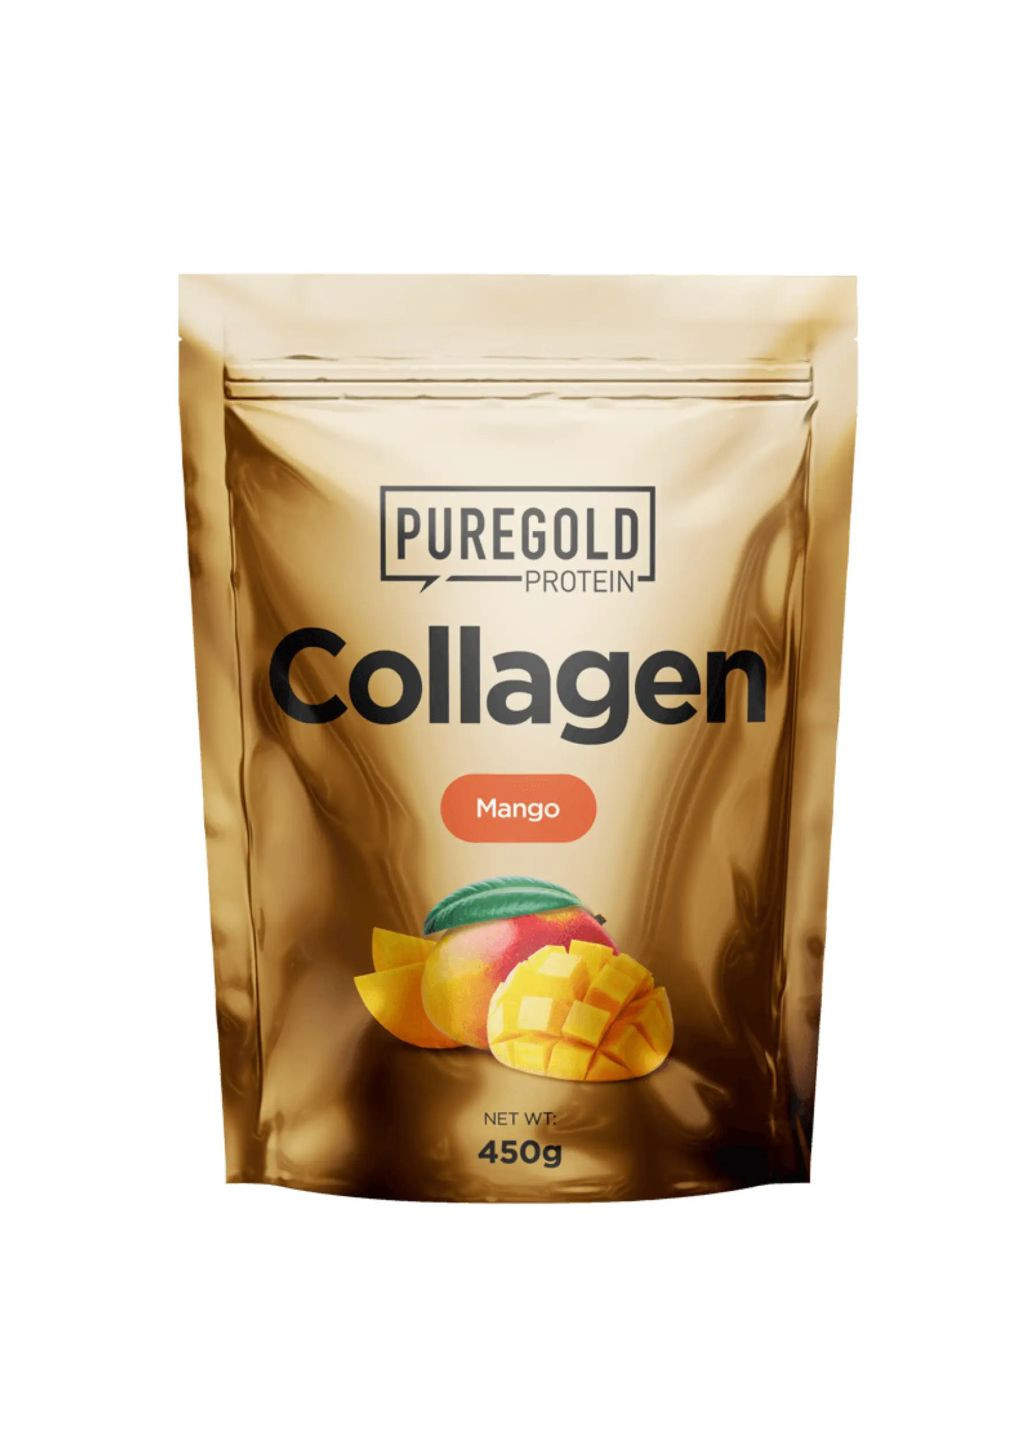 Collagen - 450g Mango (манго) коллаген Pure Gold Protein (292314744)